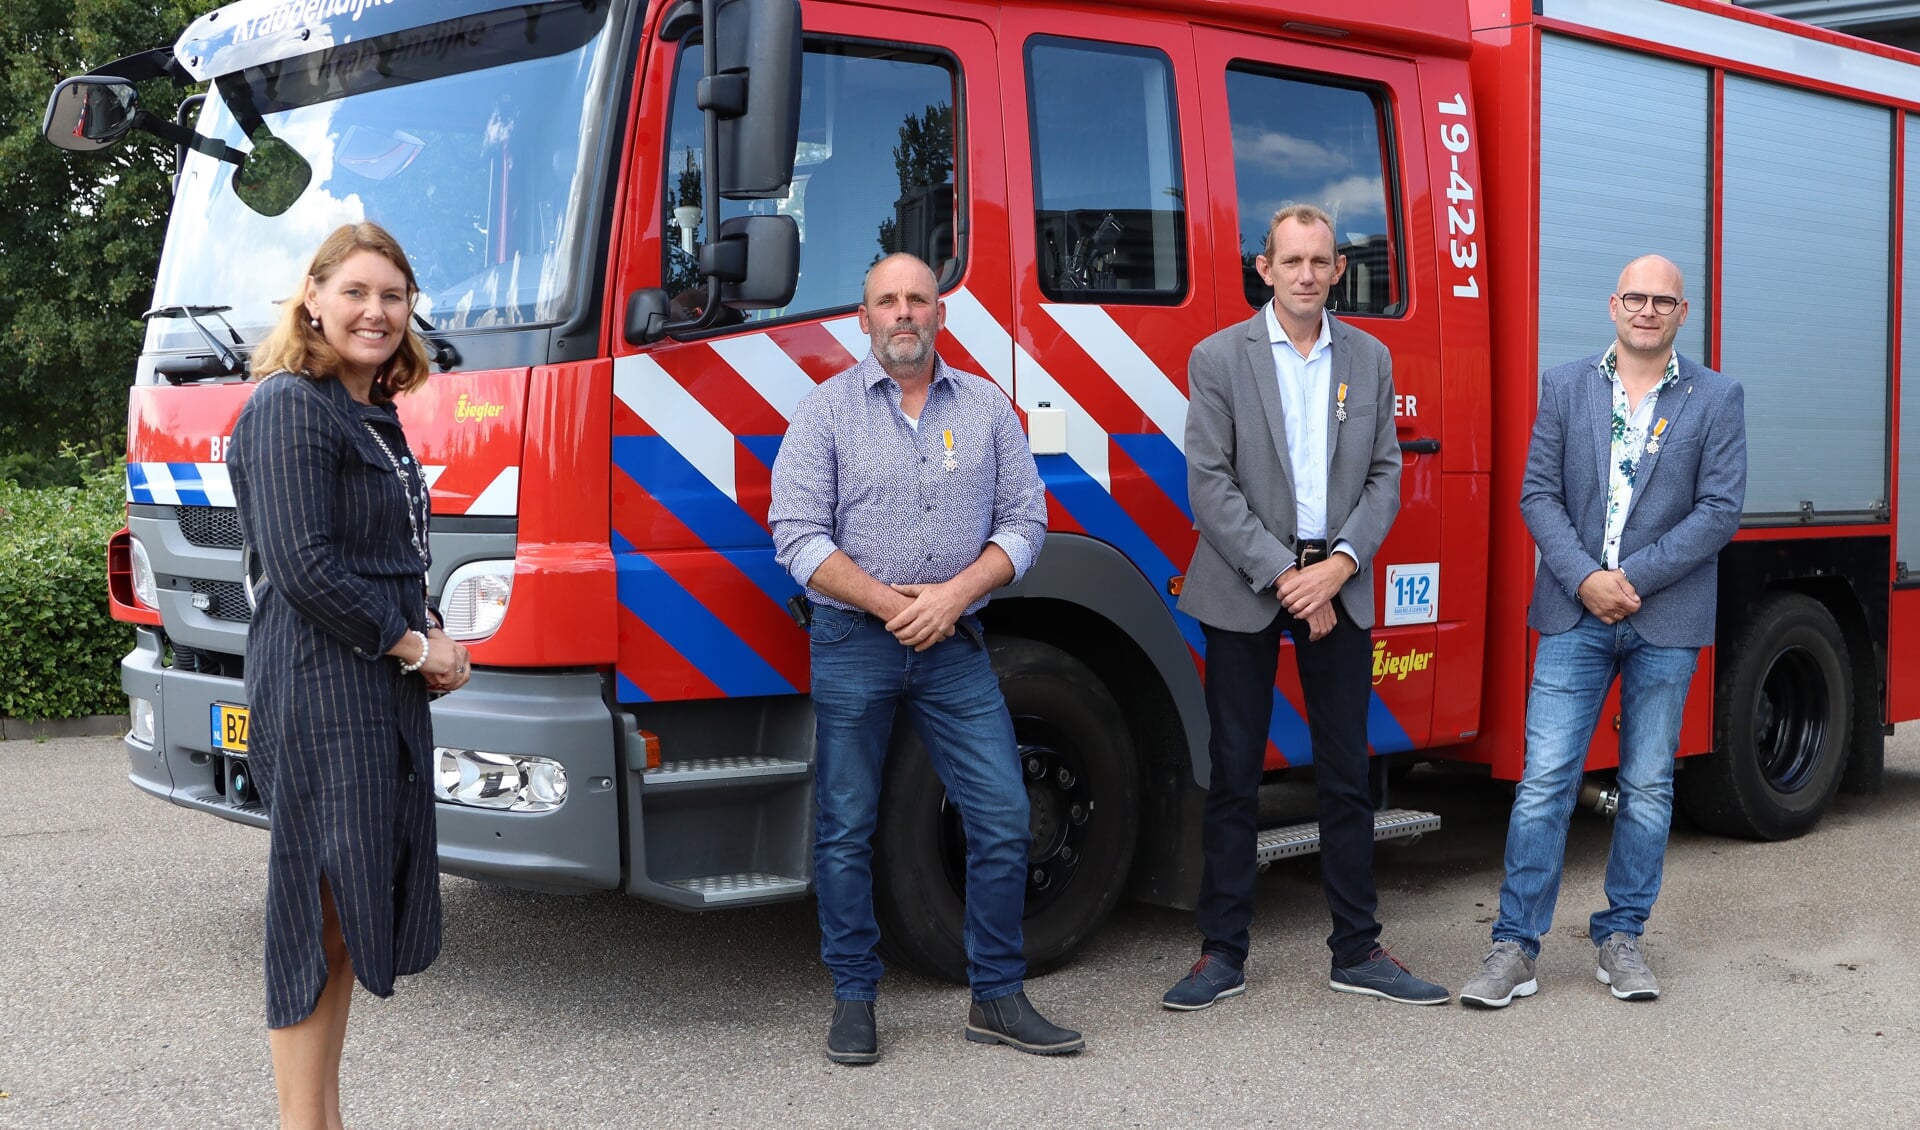 Burgemeester José van Egmond, Martin Matthijssen, John van der Grond en Arjan Huissen (vlnr).